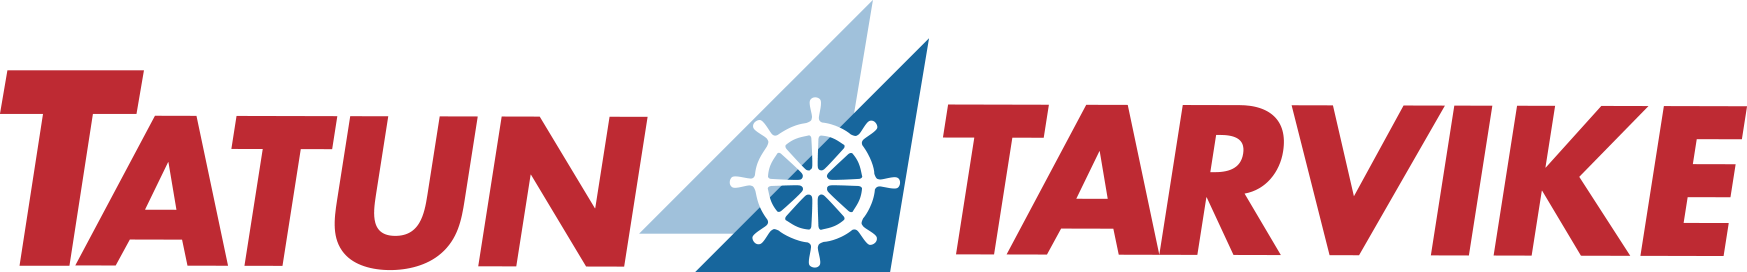 Tatu_logo